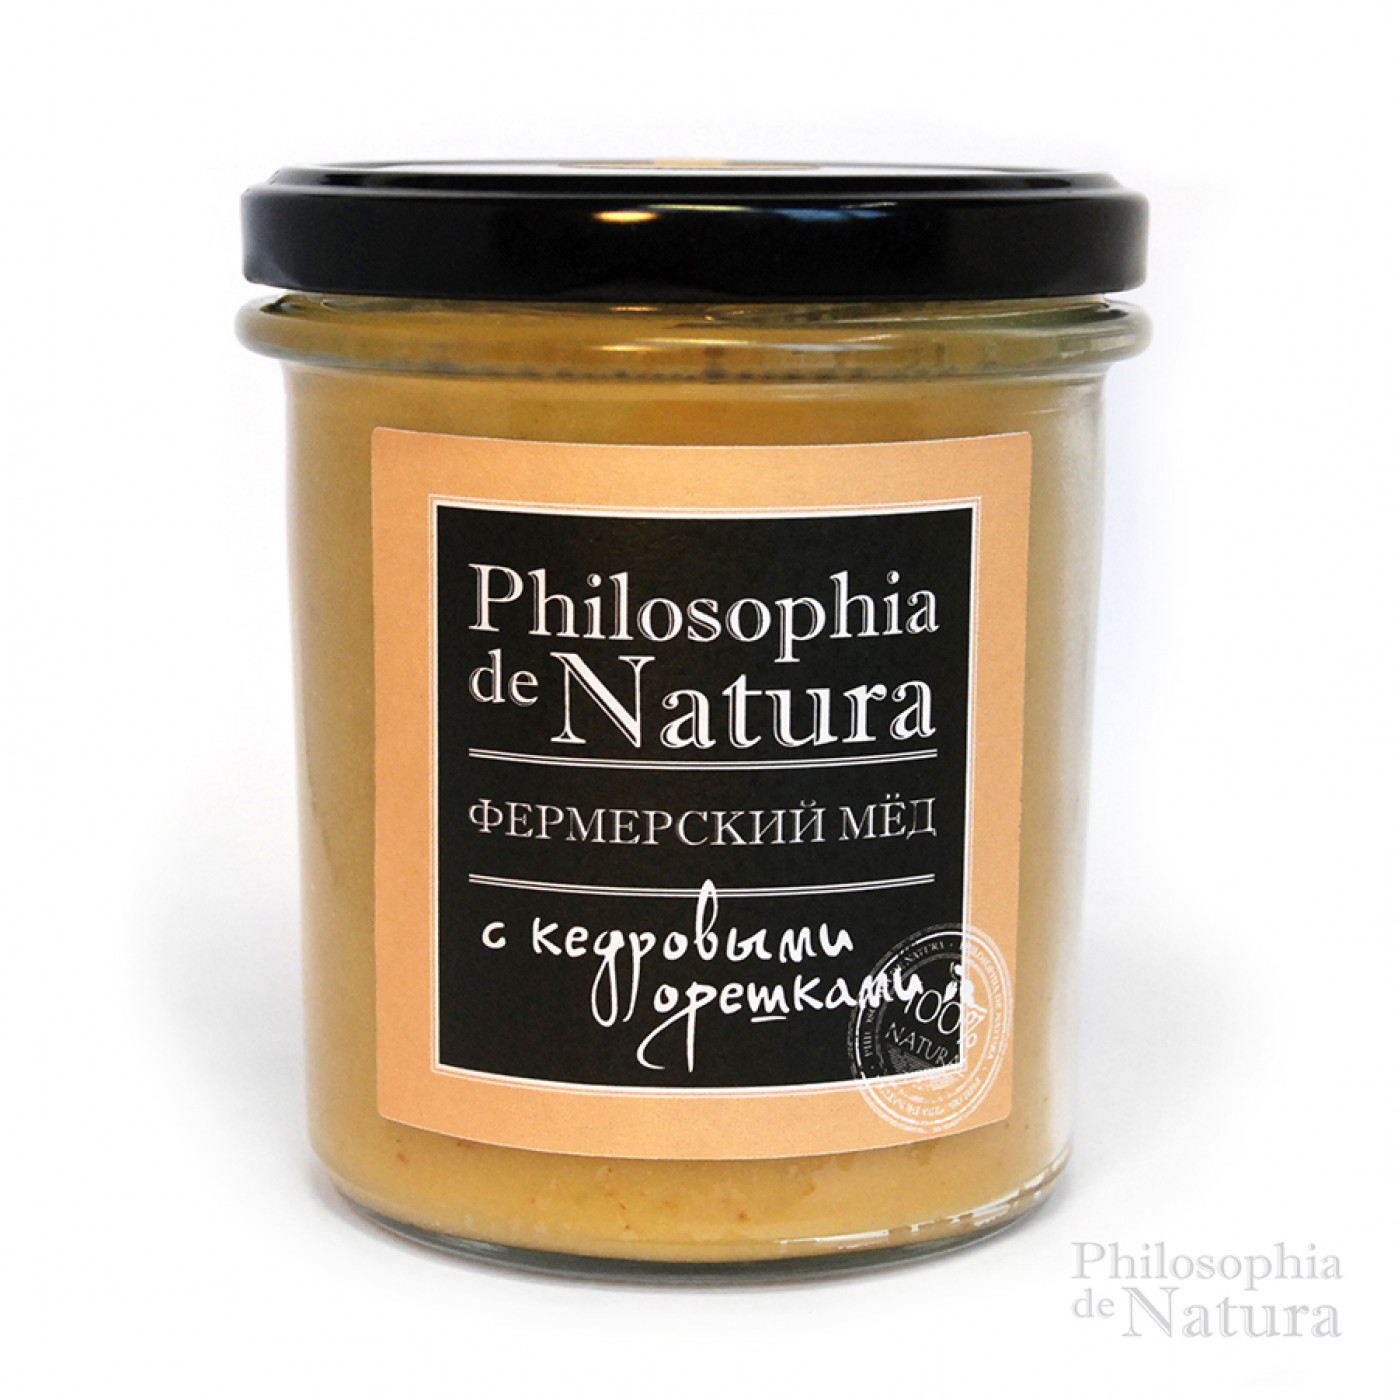 Фермерский крем-мед с кедровыми орешками Philosophiya de natura. 180 гр